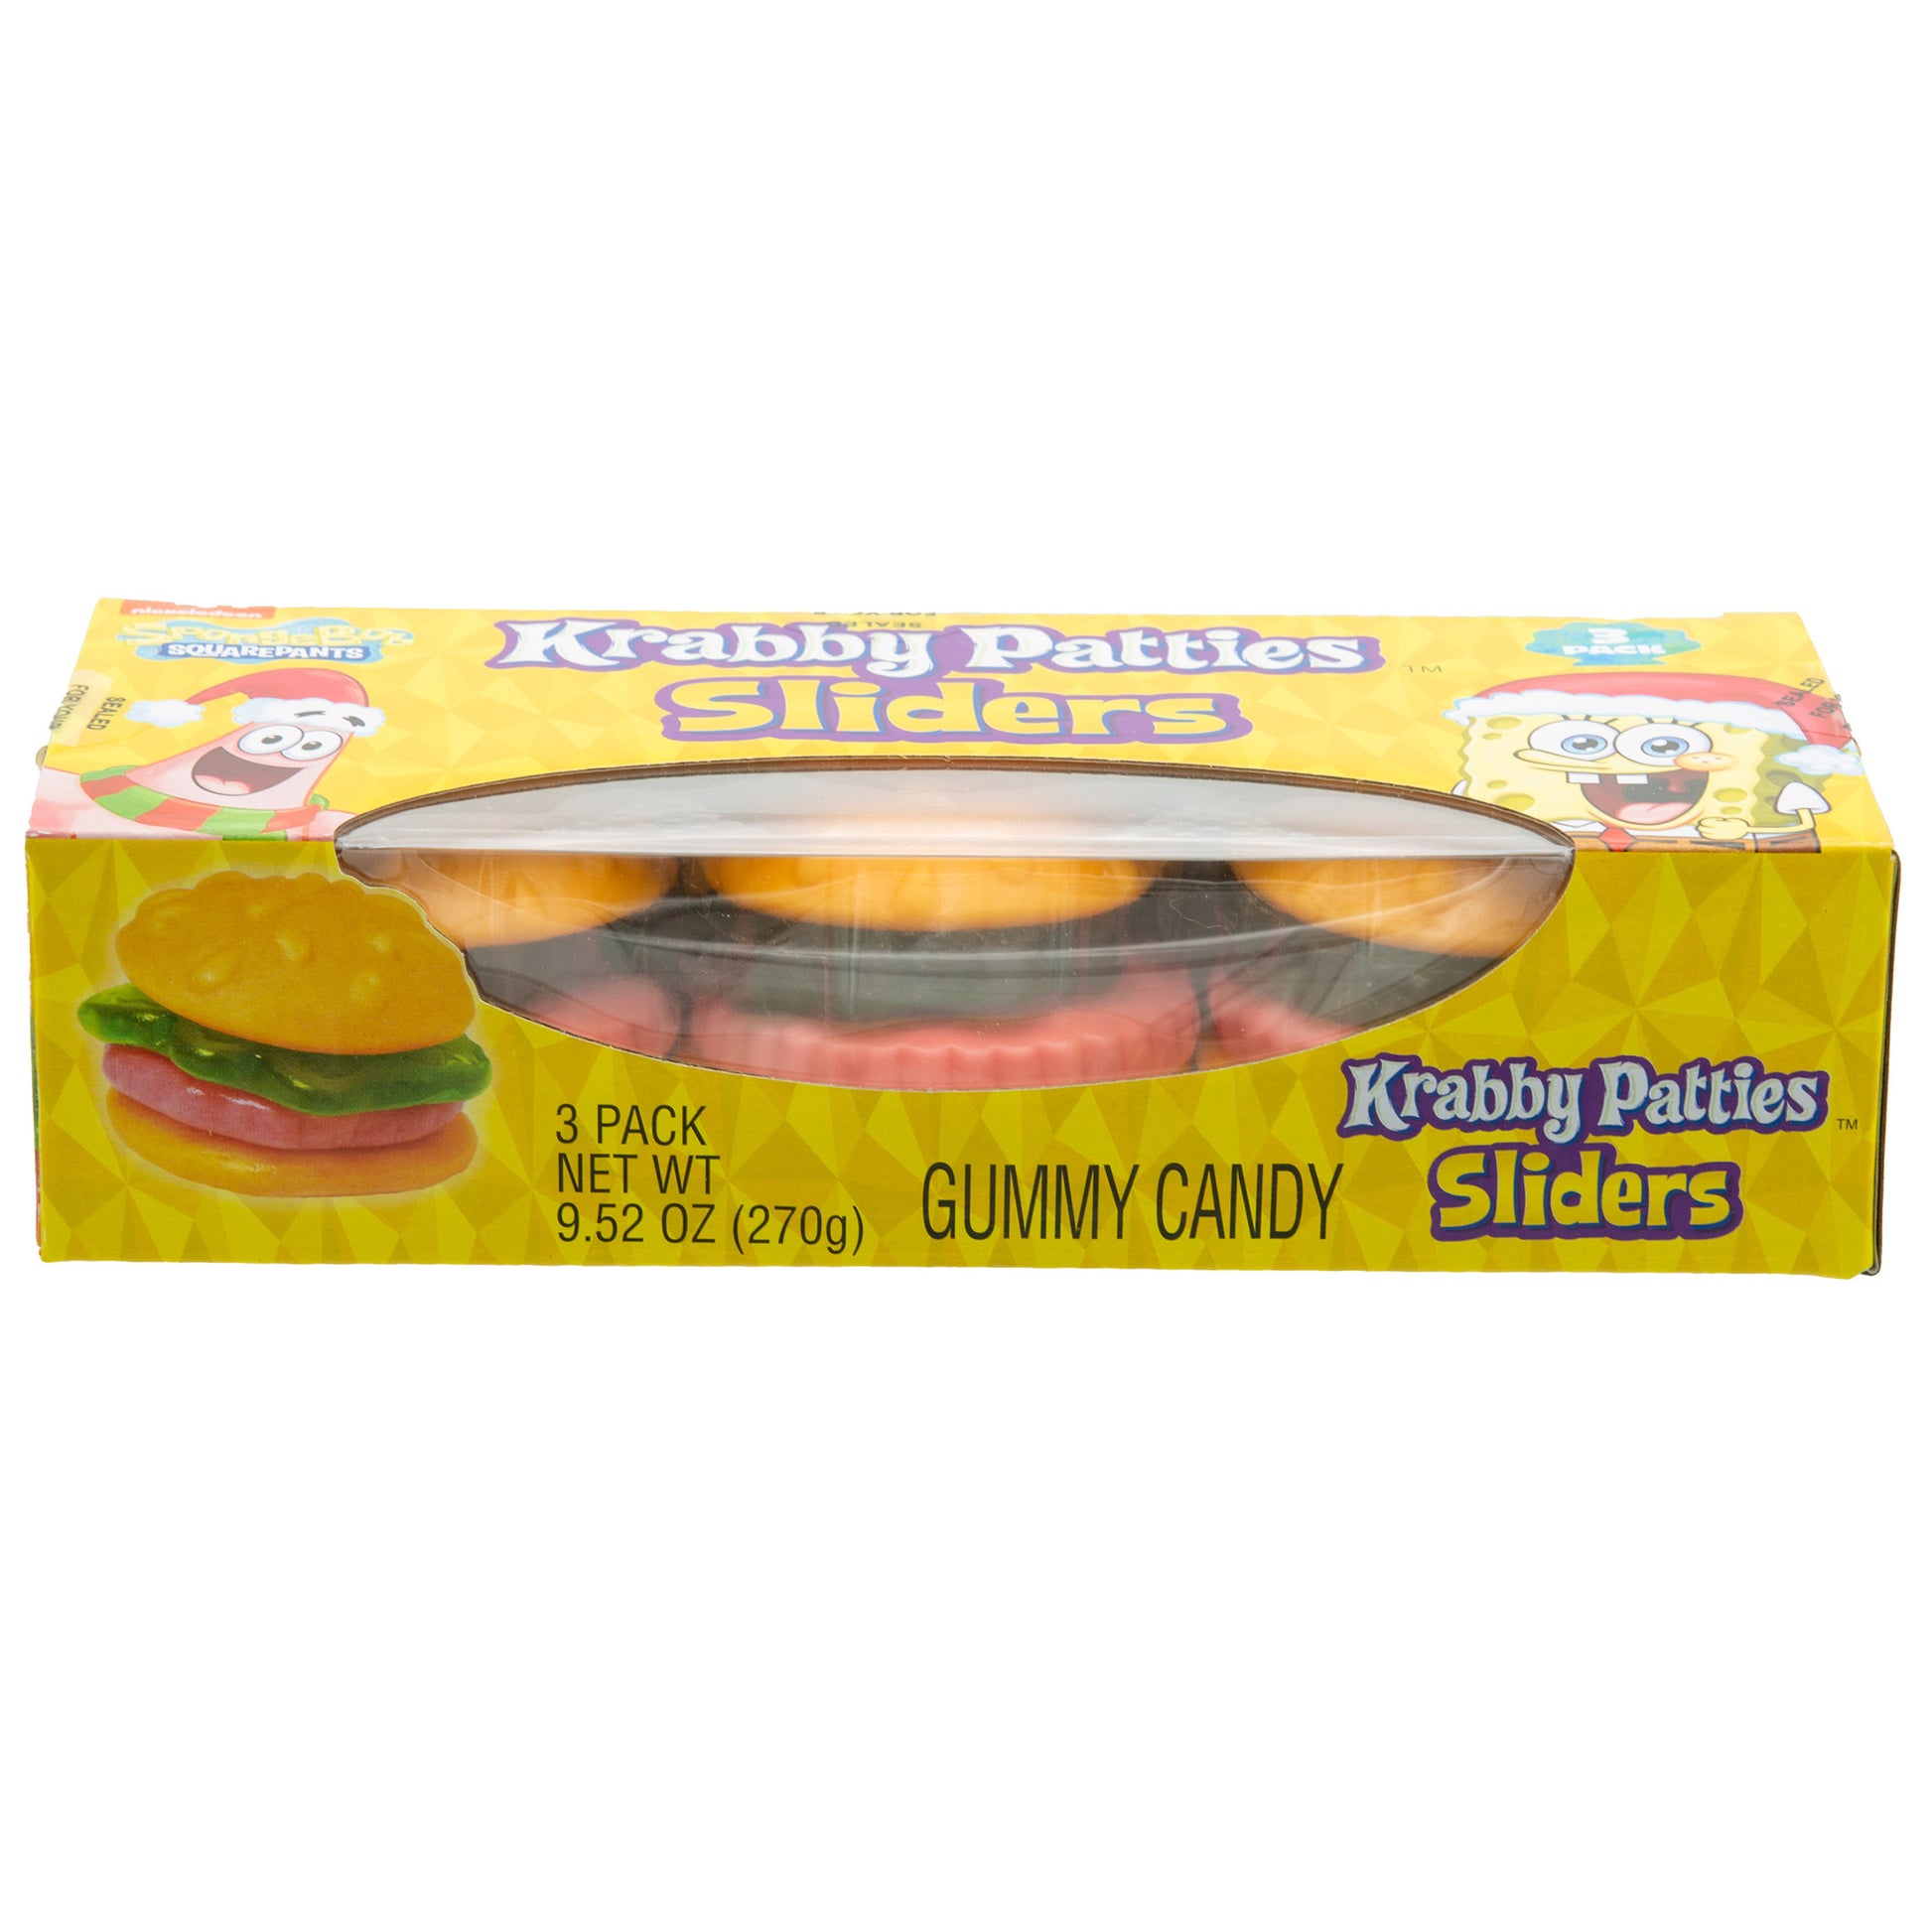 3-pack box of large krabby patties sliders gummies 